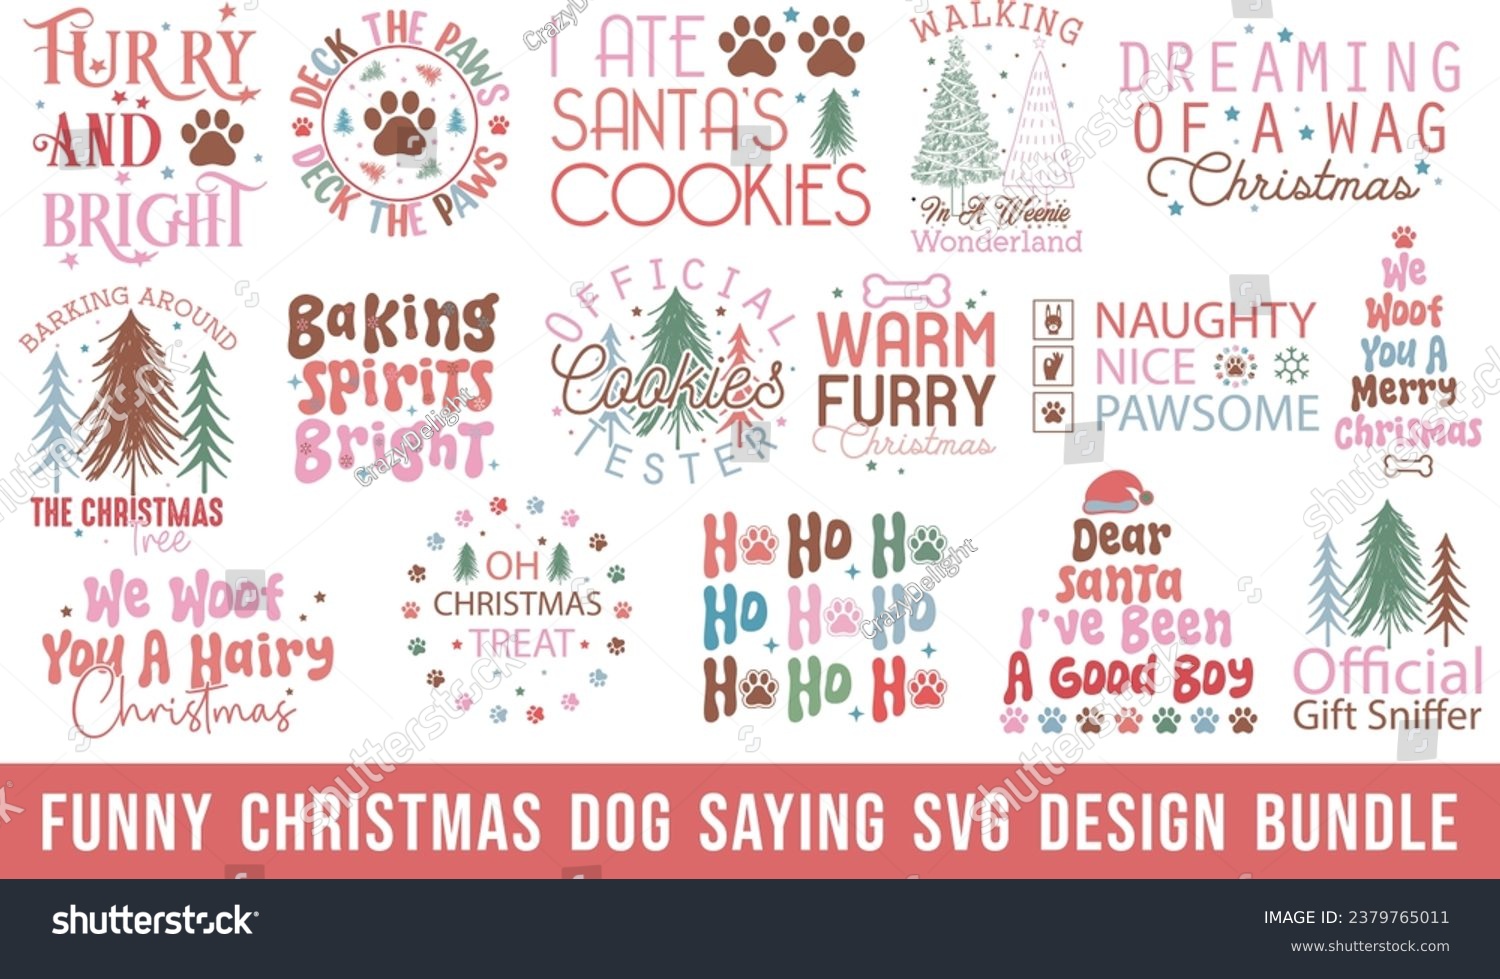 SVG of Funny Christmas Dog Saying Design svg